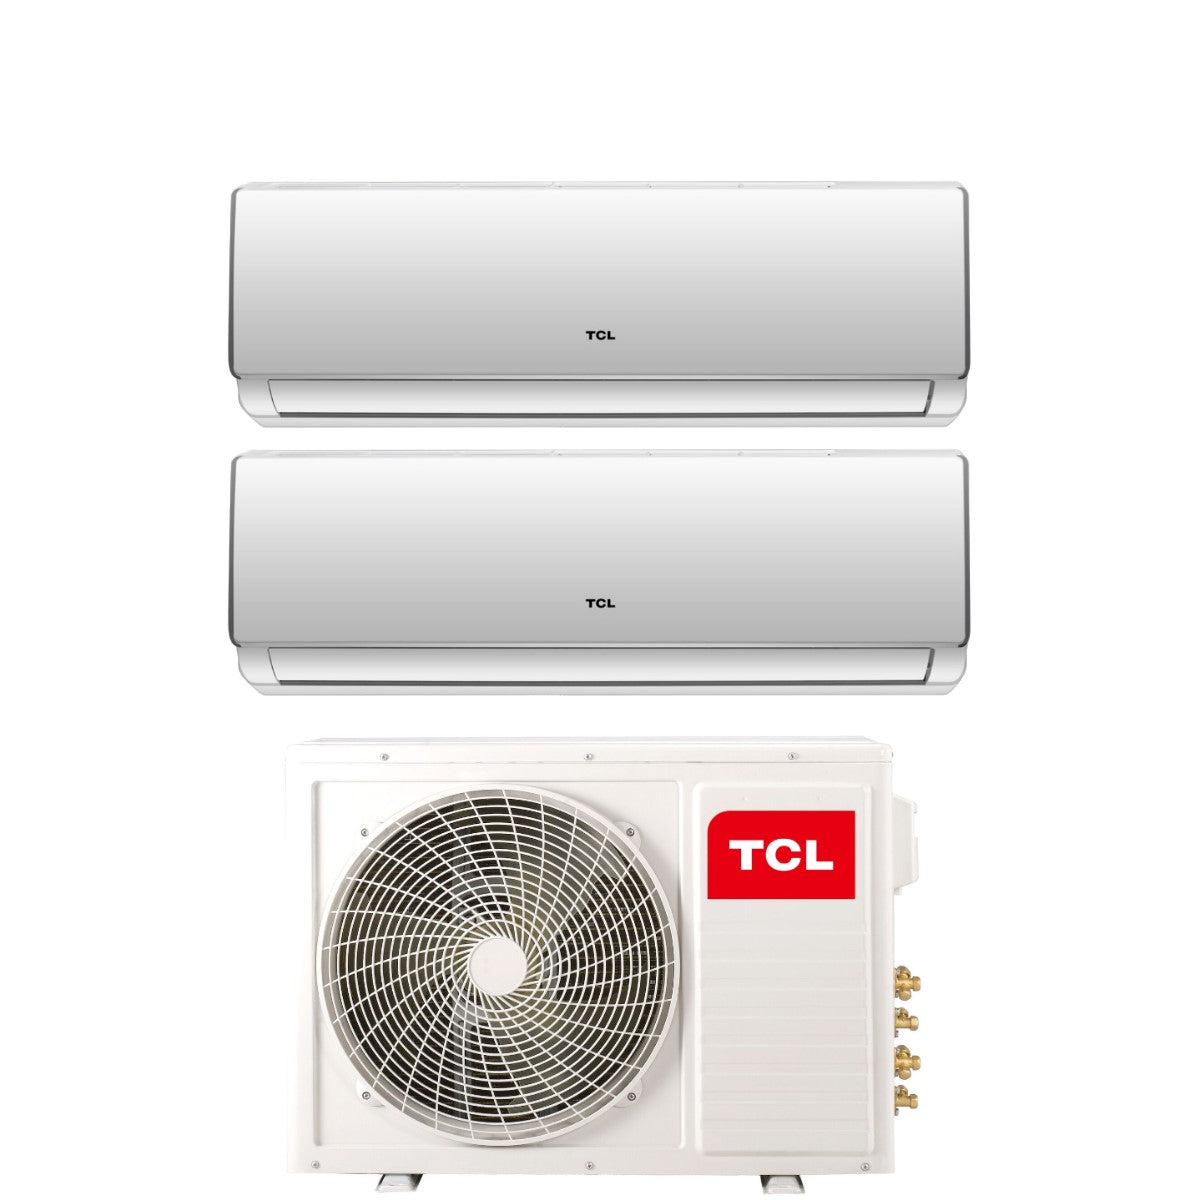 immagine-1-tcl-climatizzatore-condizionatore-tcl-dual-split-inverter-serie-elite-f2-99-con-mt1821-r-32-wi-fi-integrato-90009000